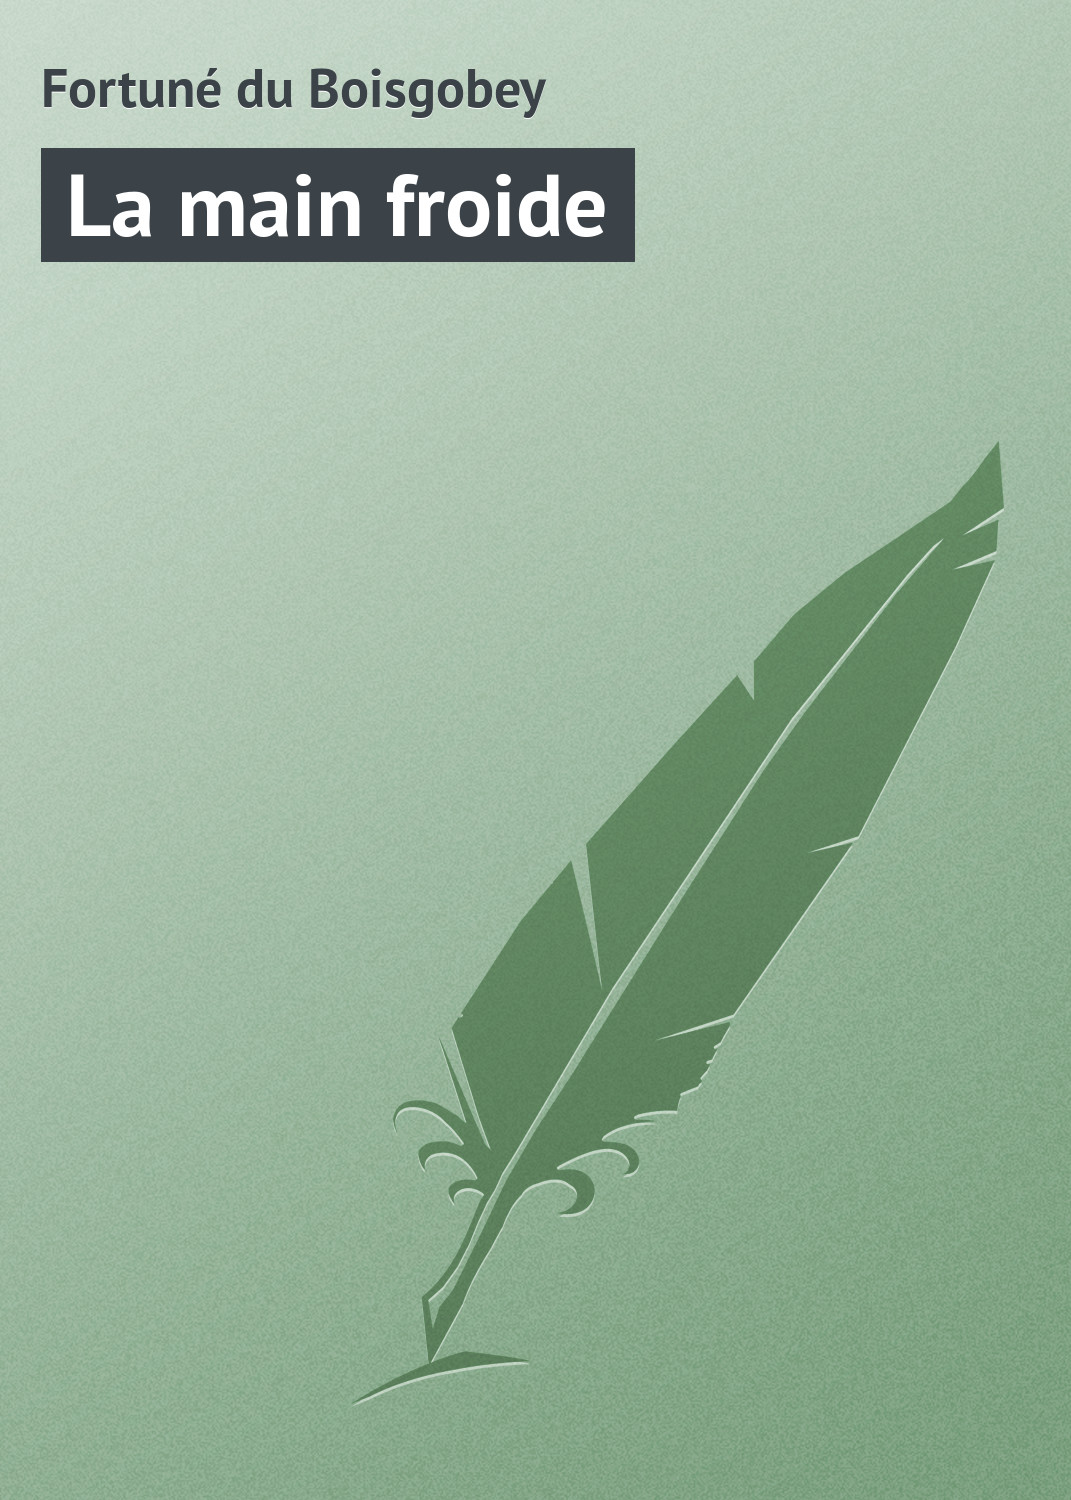 Книга La main froide из серии , созданная Fortuné du, может относится к жанру Зарубежная старинная литература, Зарубежная классика. Стоимость электронной книги La main froide с идентификатором 21104694 составляет 5.99 руб.